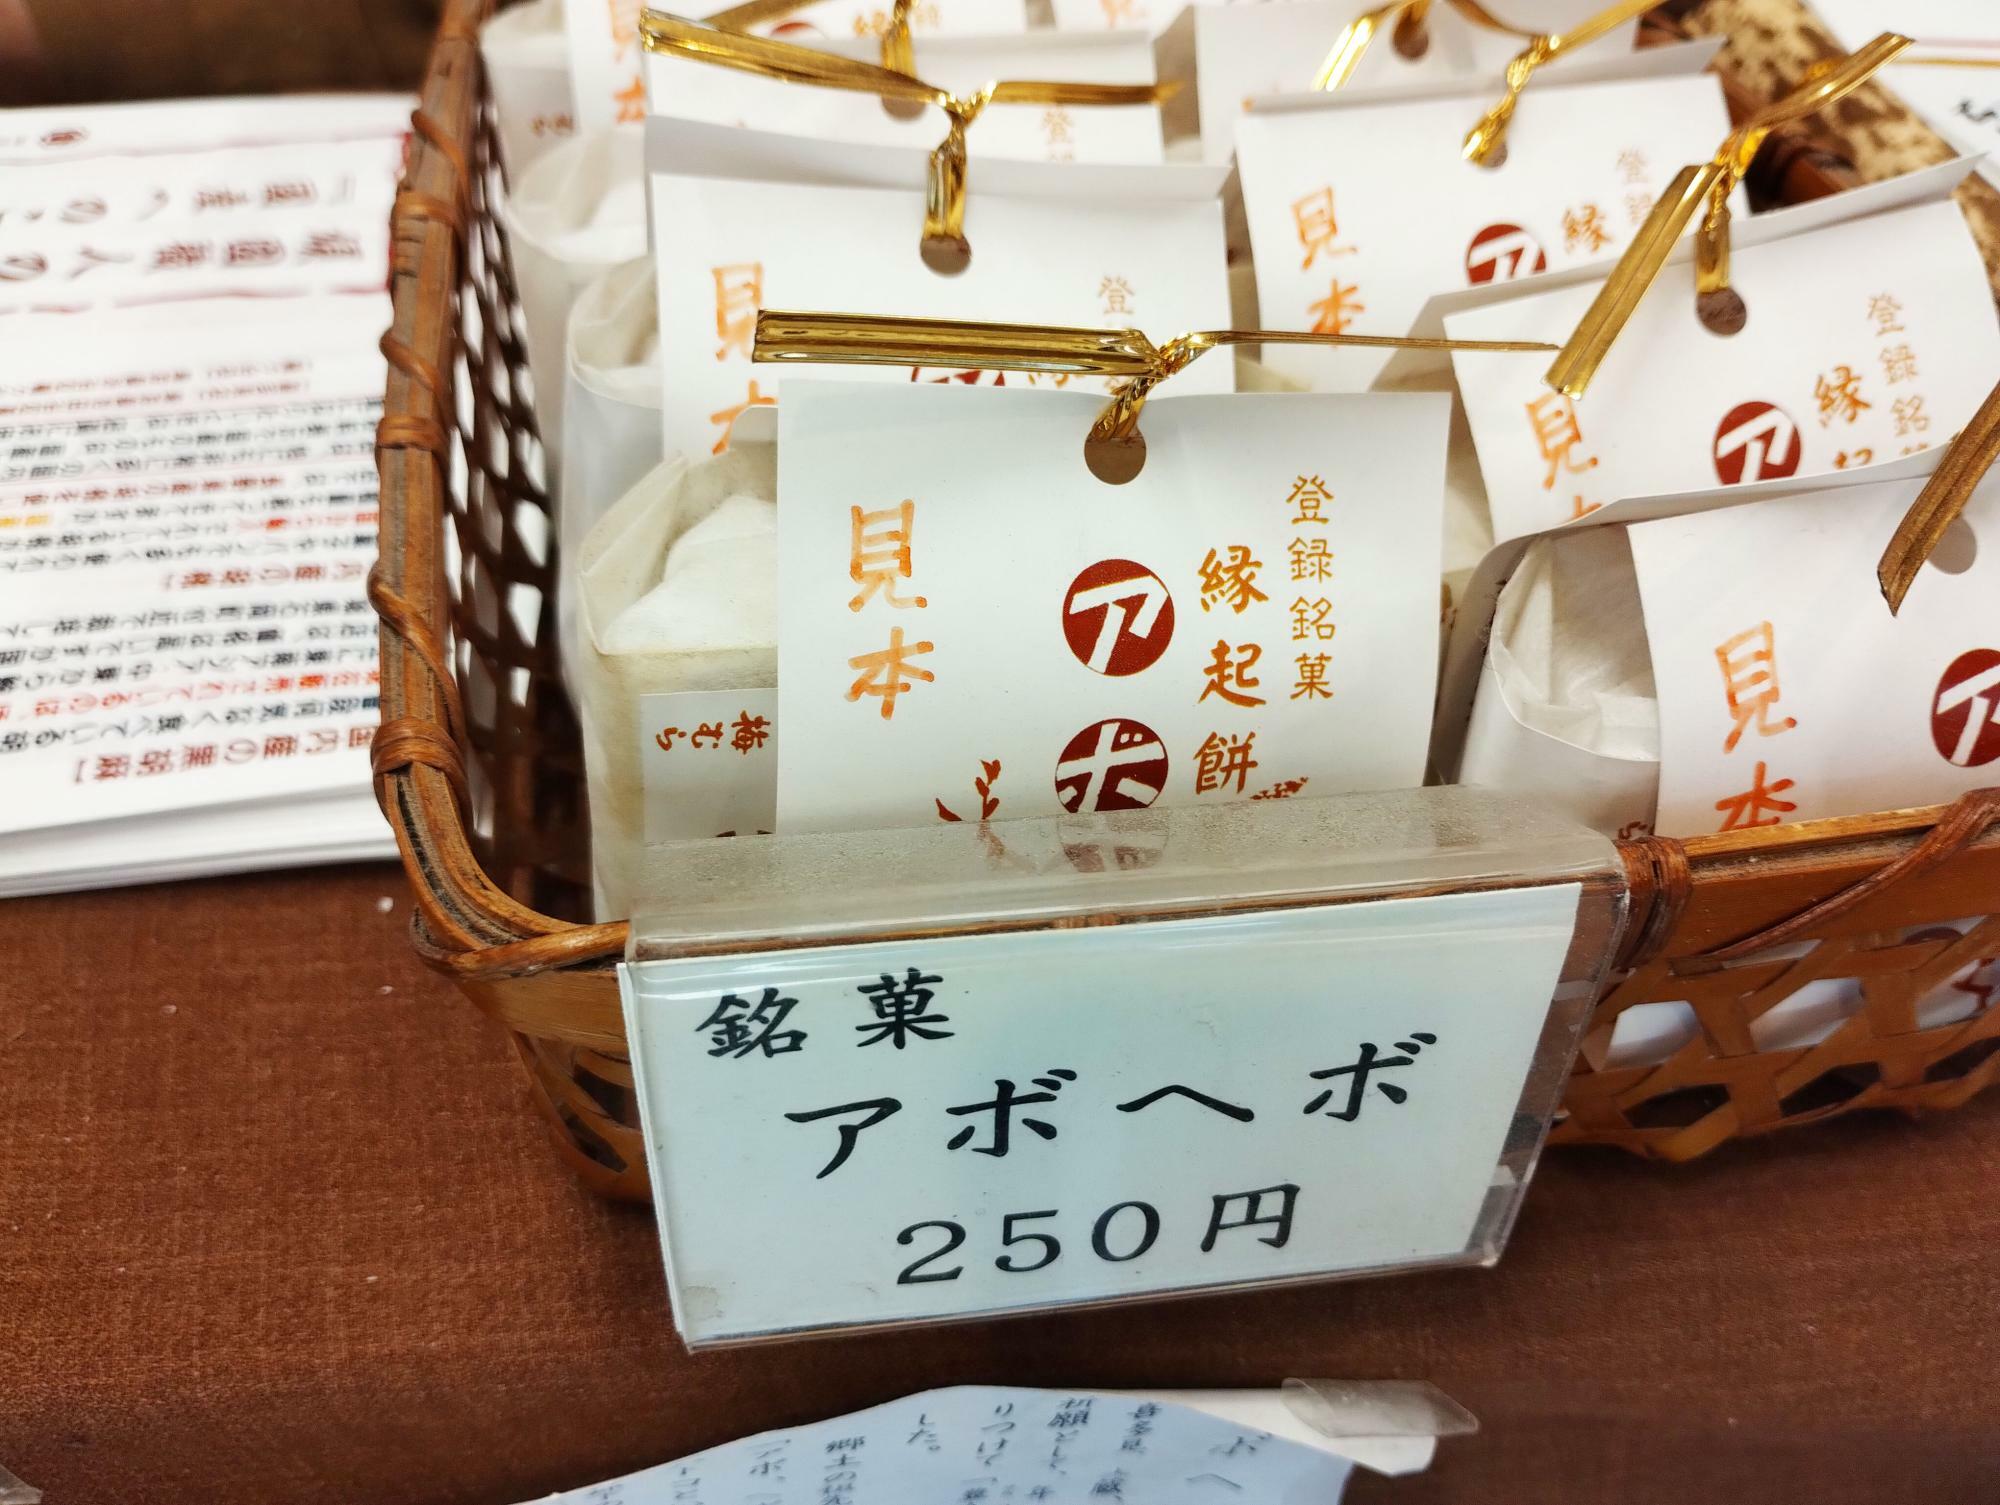 銘菓 アボヘボ 250円